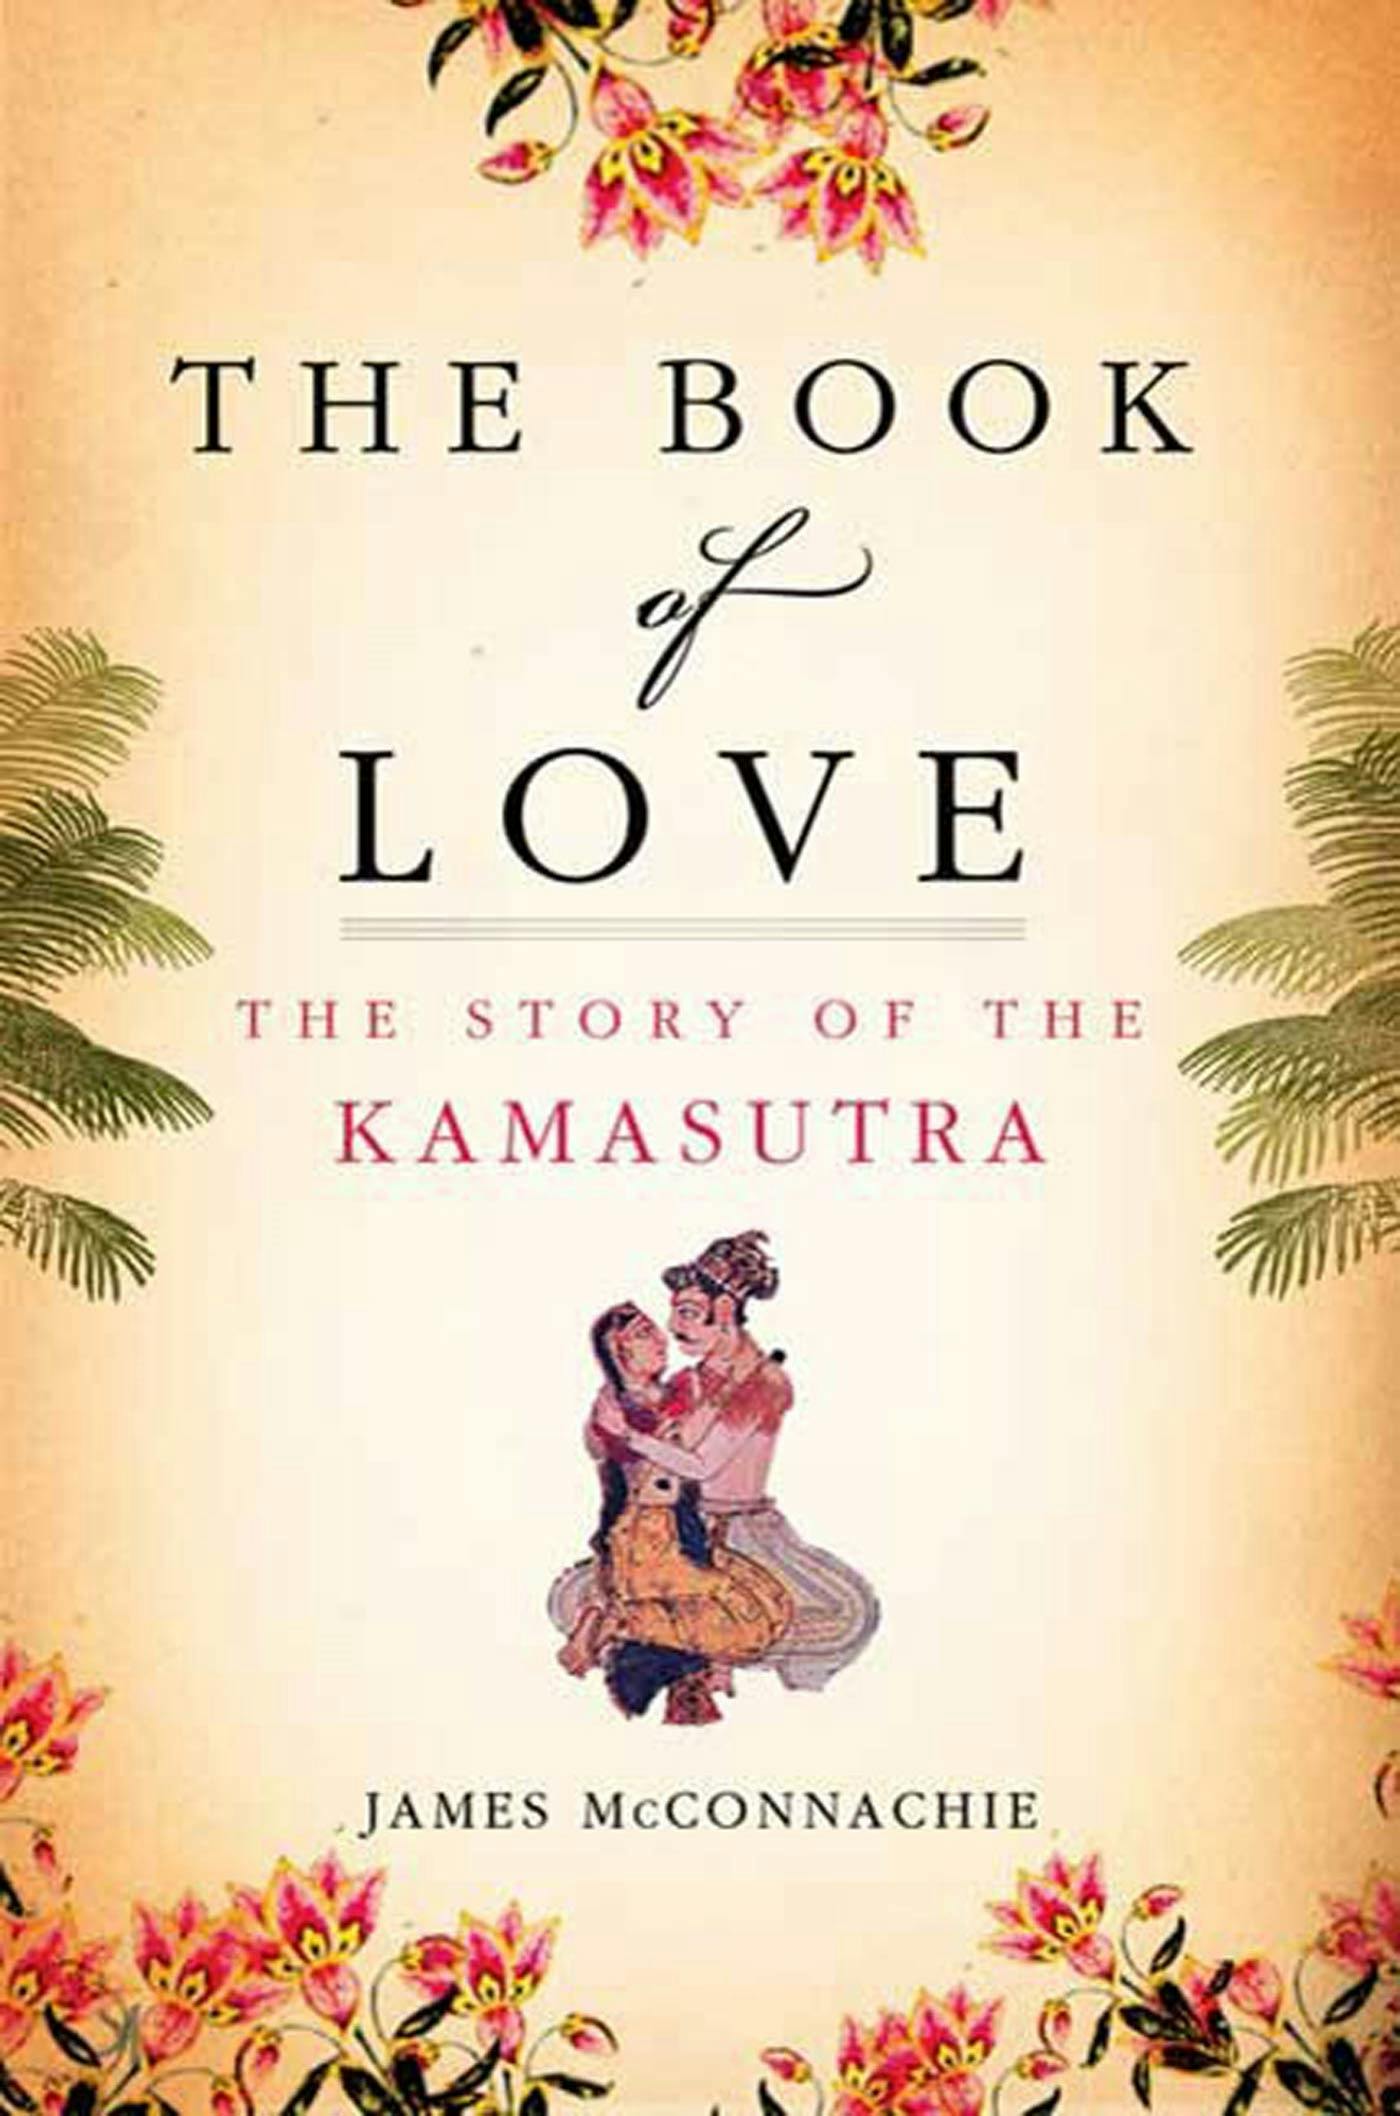 Nepali Kamasutra Nepali Kamasutra - The Book of Love